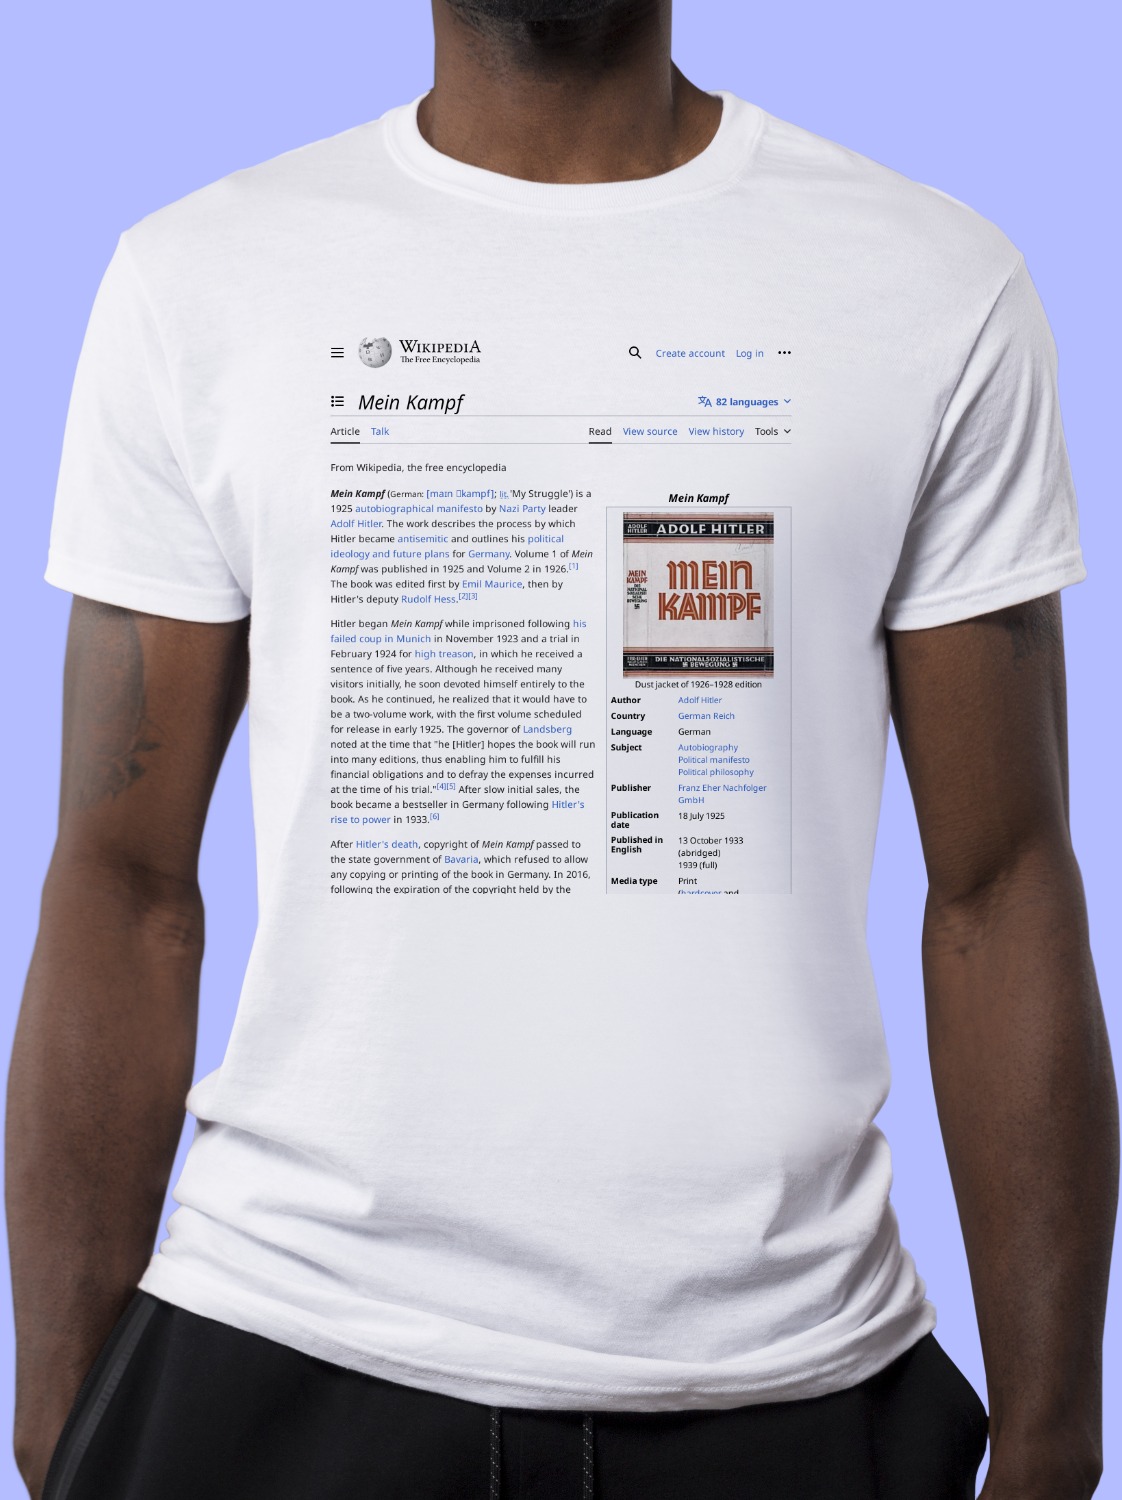 Mein_Kampf Wikipedia Shirt